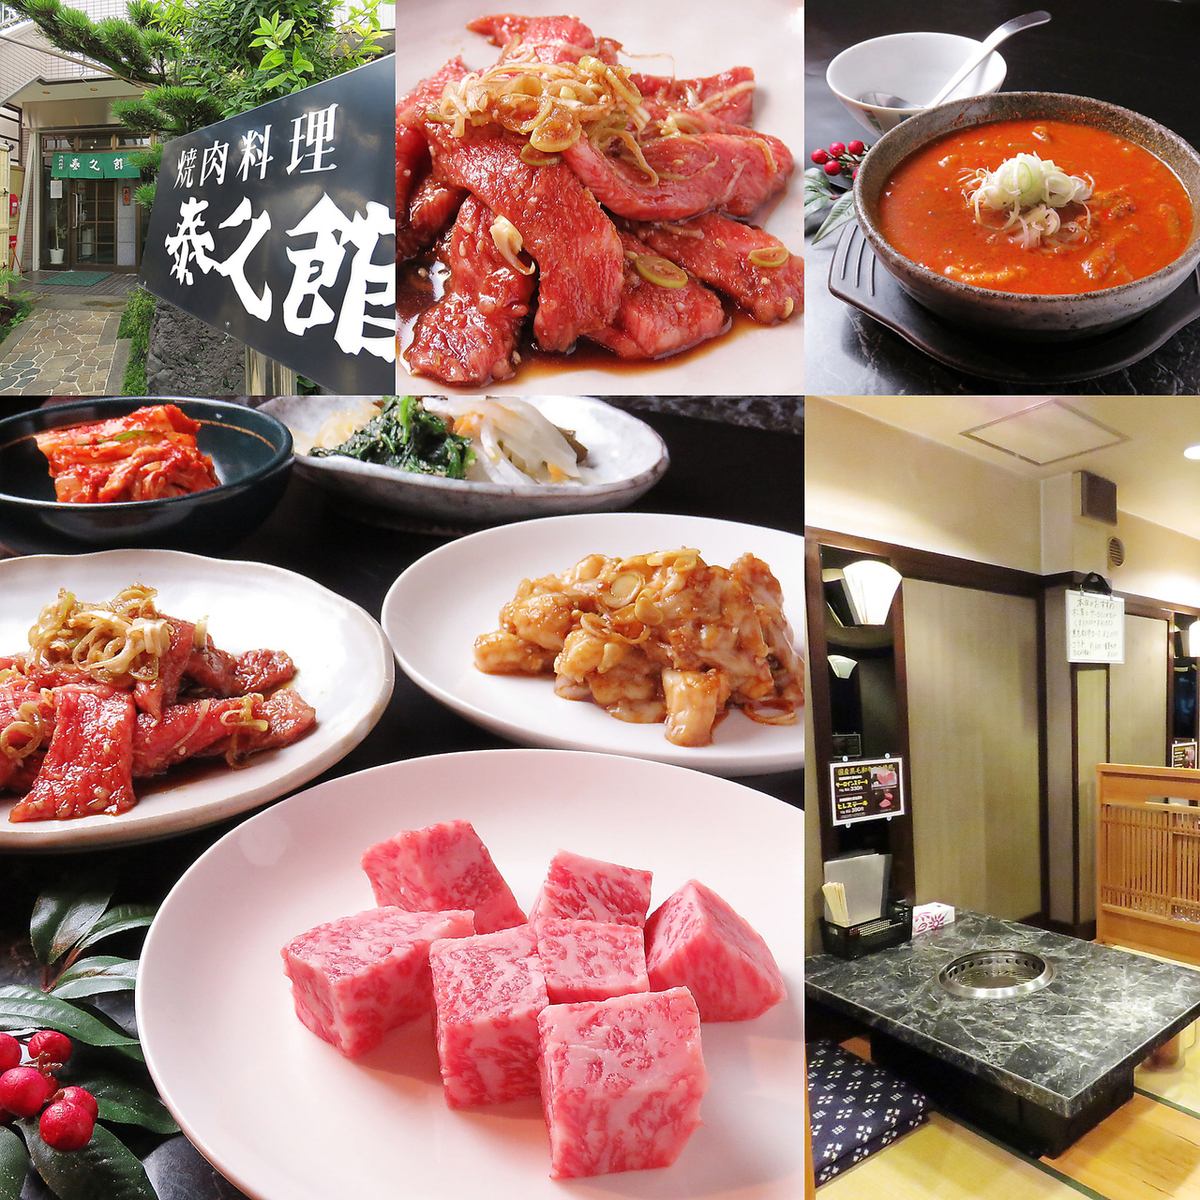 [Otobashi Station] Be sure to try luxurious yakiniku using Japanese black beef